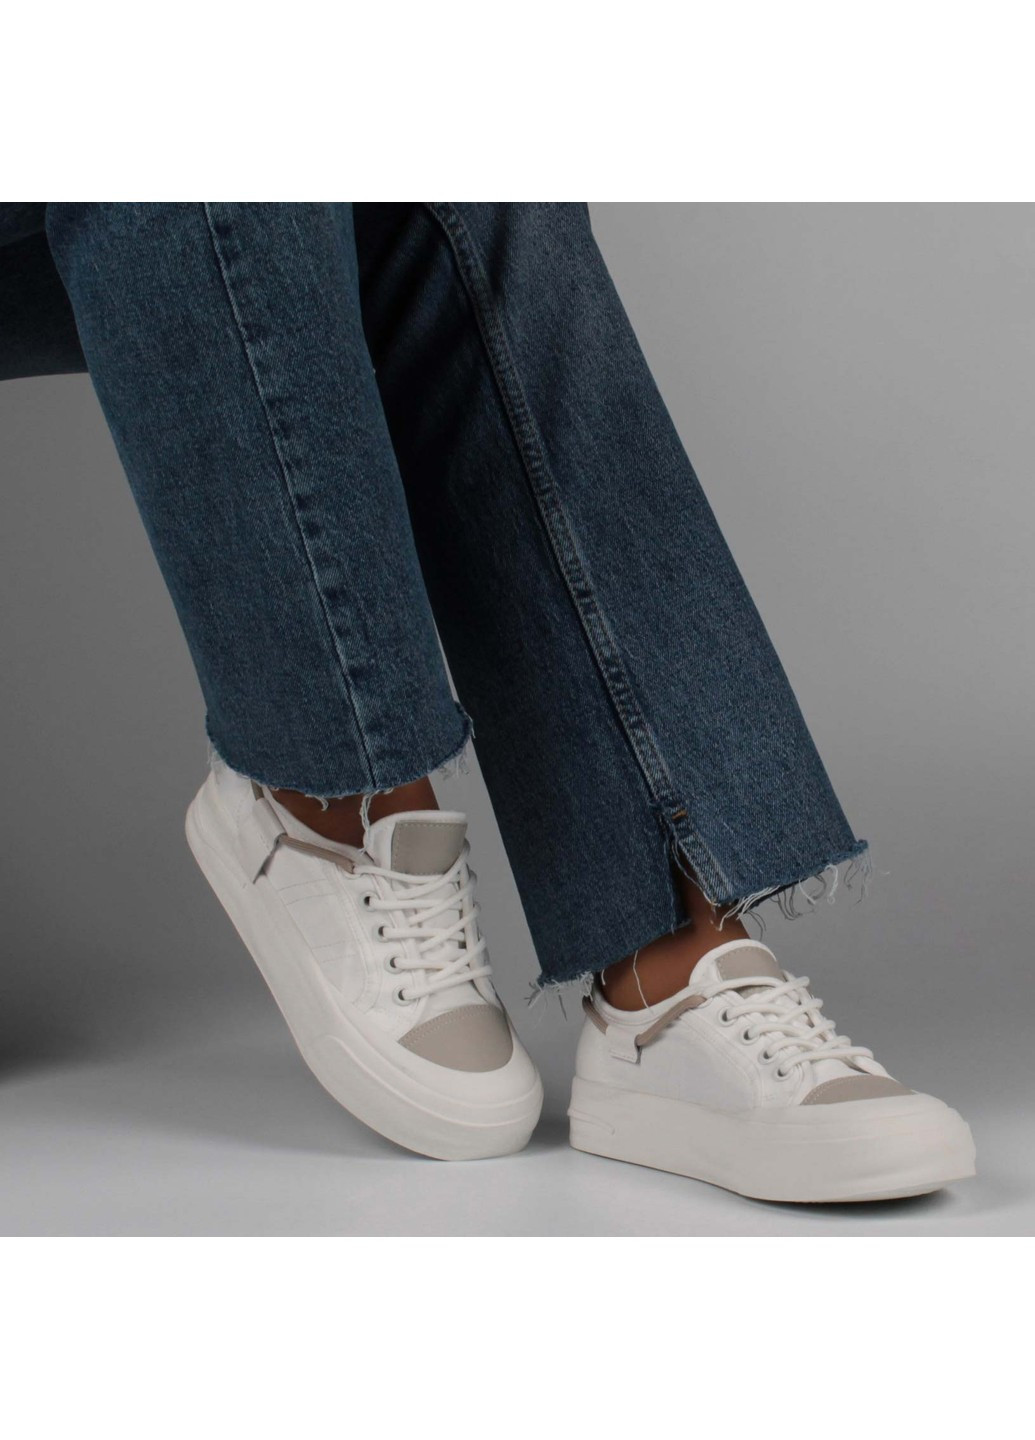 Белые демисезонные женские кроссовки 198944 Buts